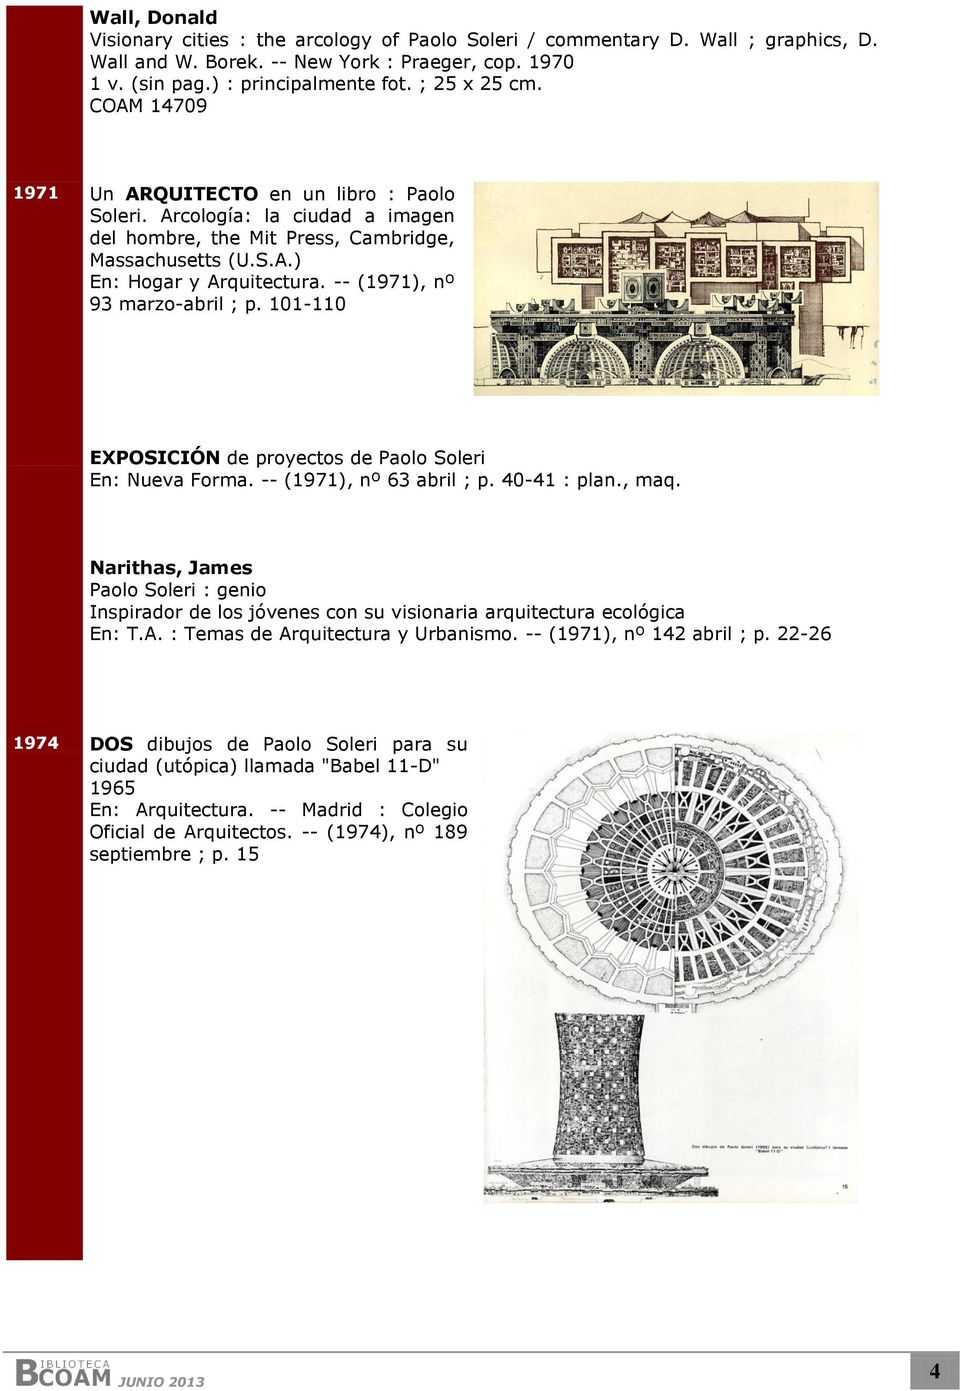 -- (1971), nº 93 marzo-abril ; p. 101-110 EXPOSICIÓN de proyectos de Paolo Soleri En: Nueva Forma. -- (1971), nº 63 abril ; p. 40-41 : plan., maq.